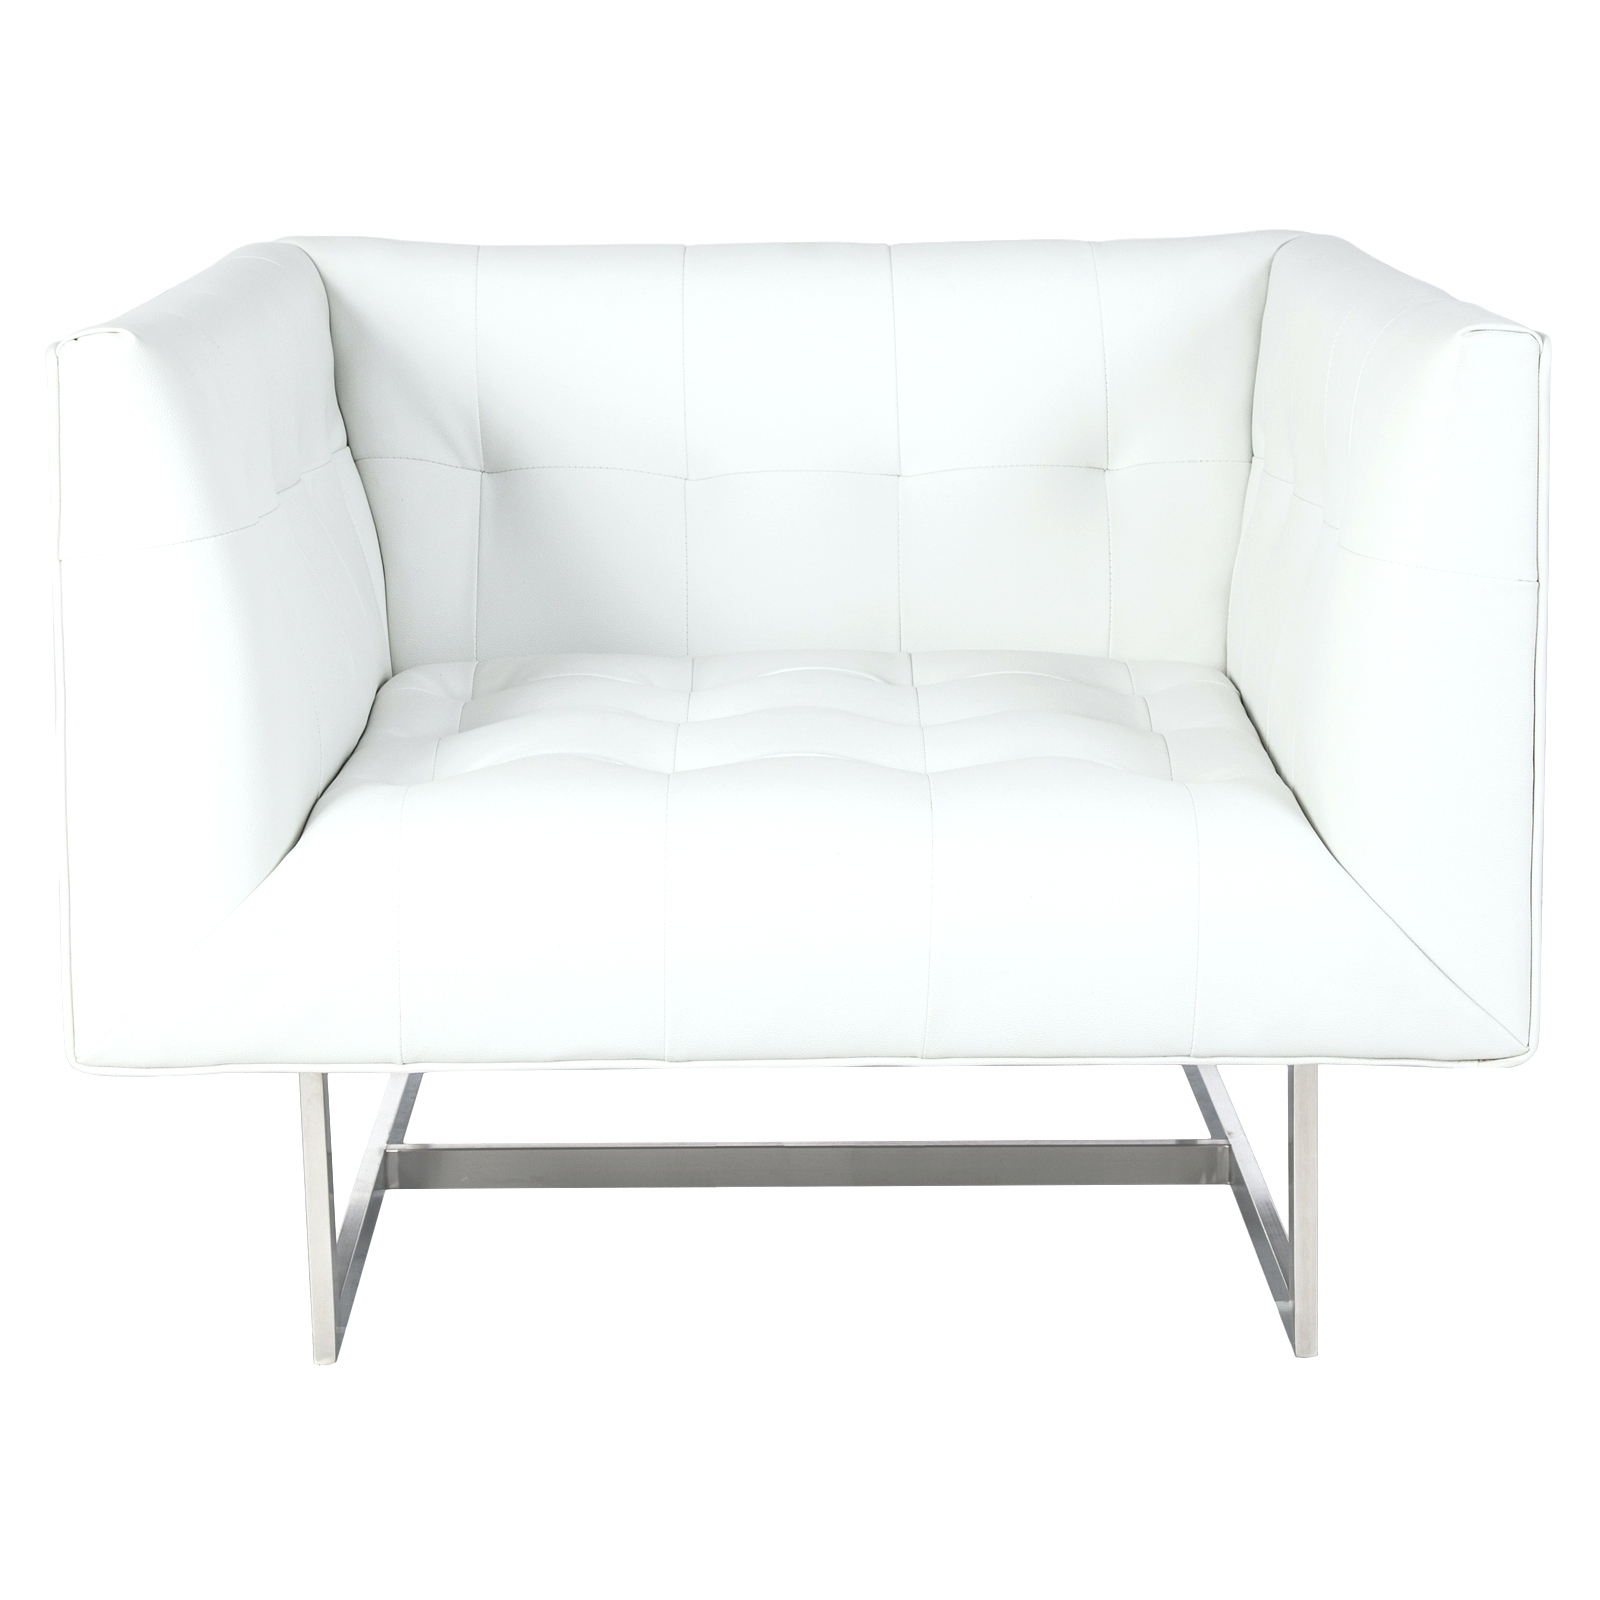 White Chaise Lounge Chair Cushions • Lounge Chairs Ideas